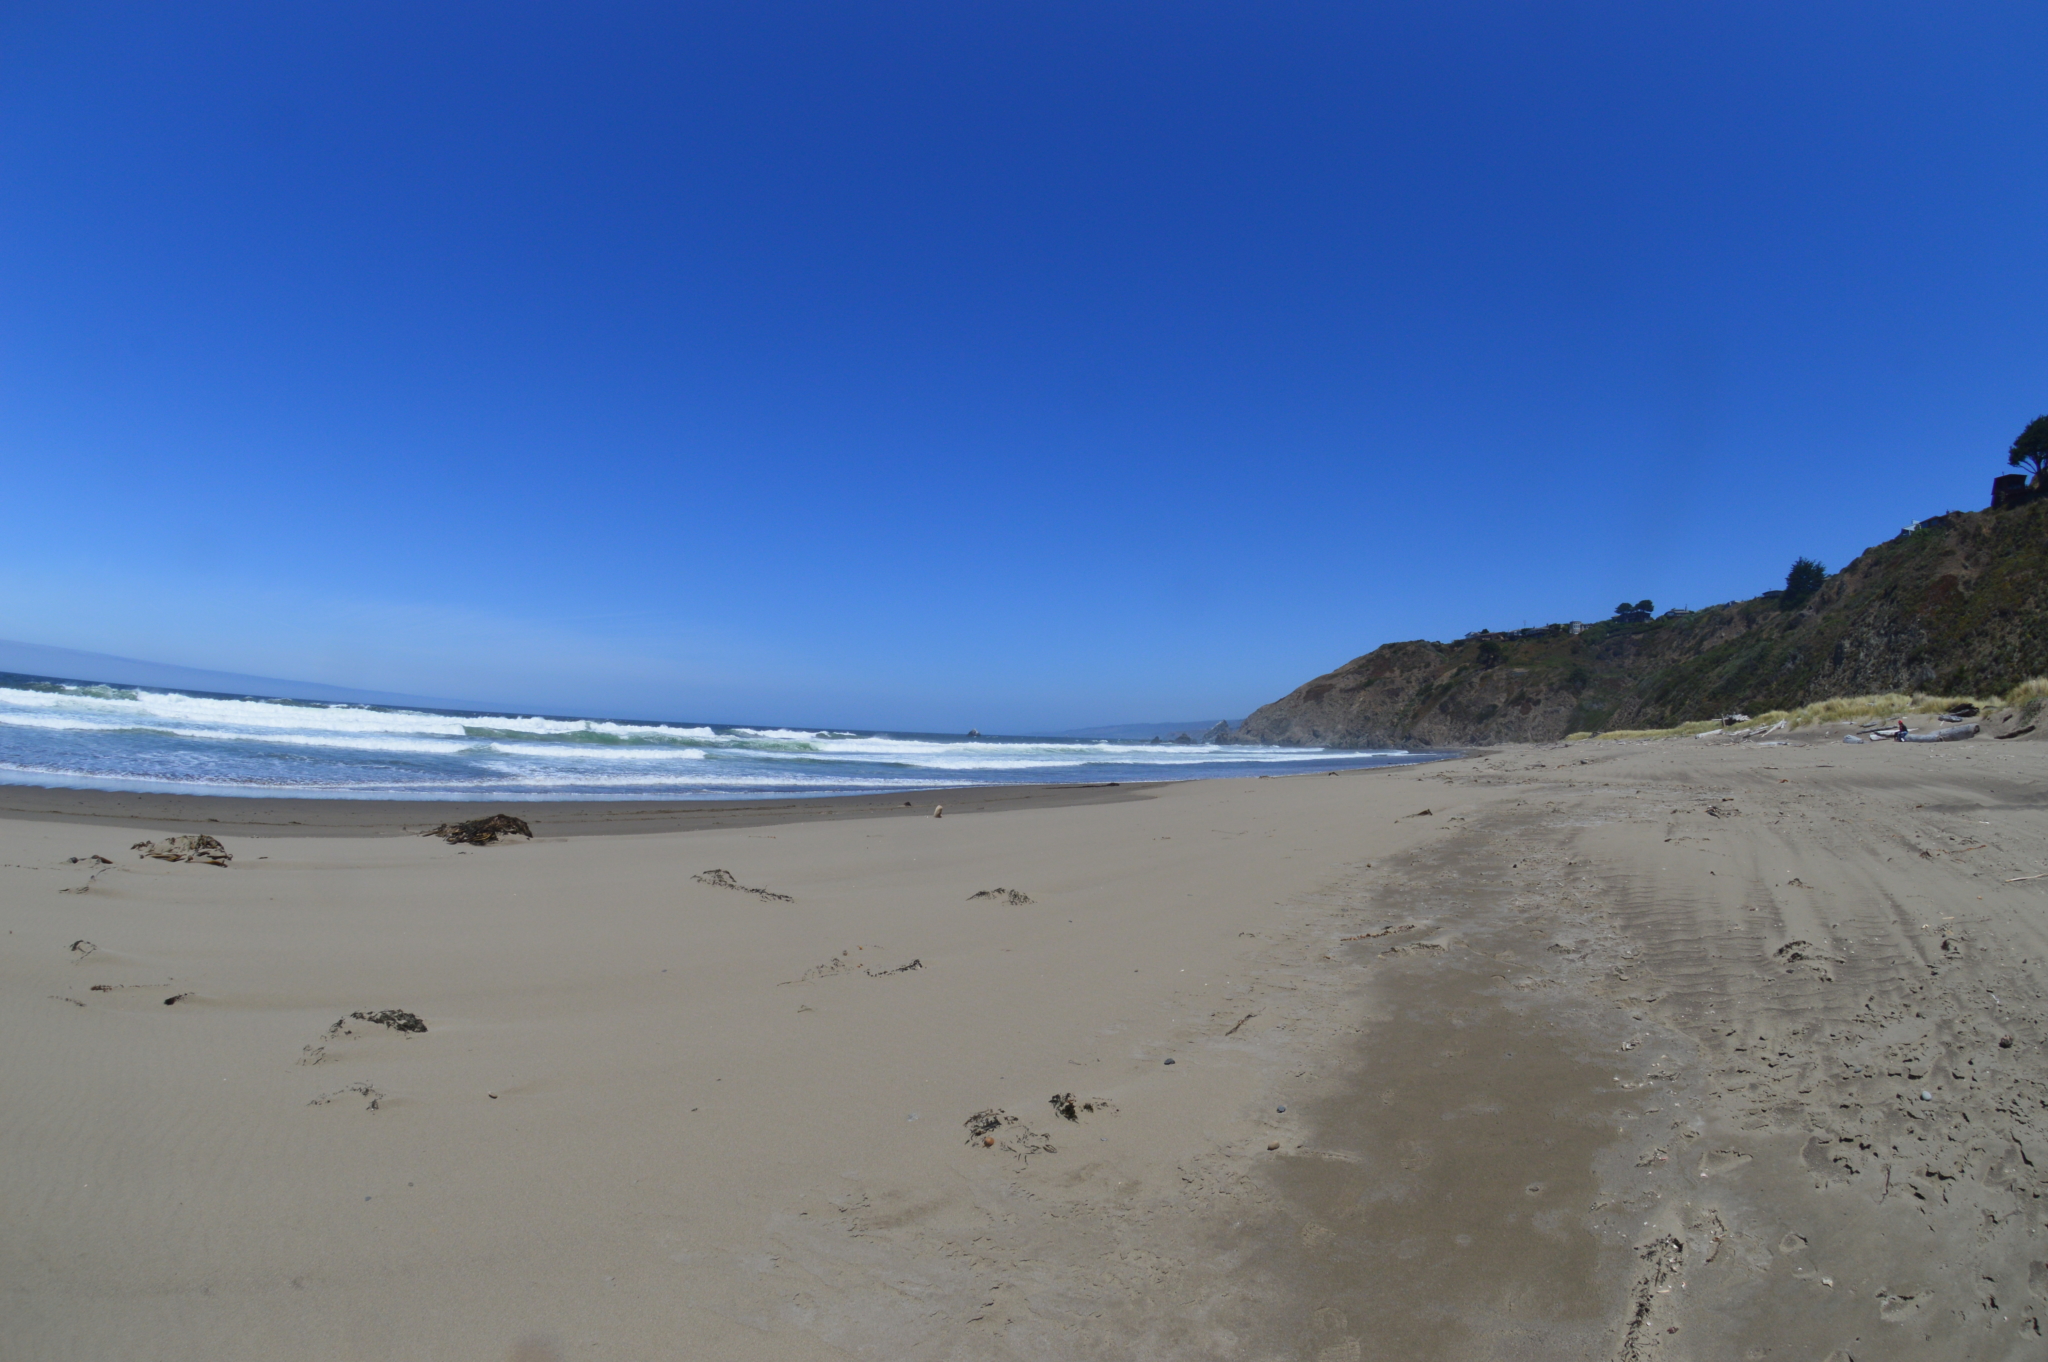 Sandy beach in California on a sunny day